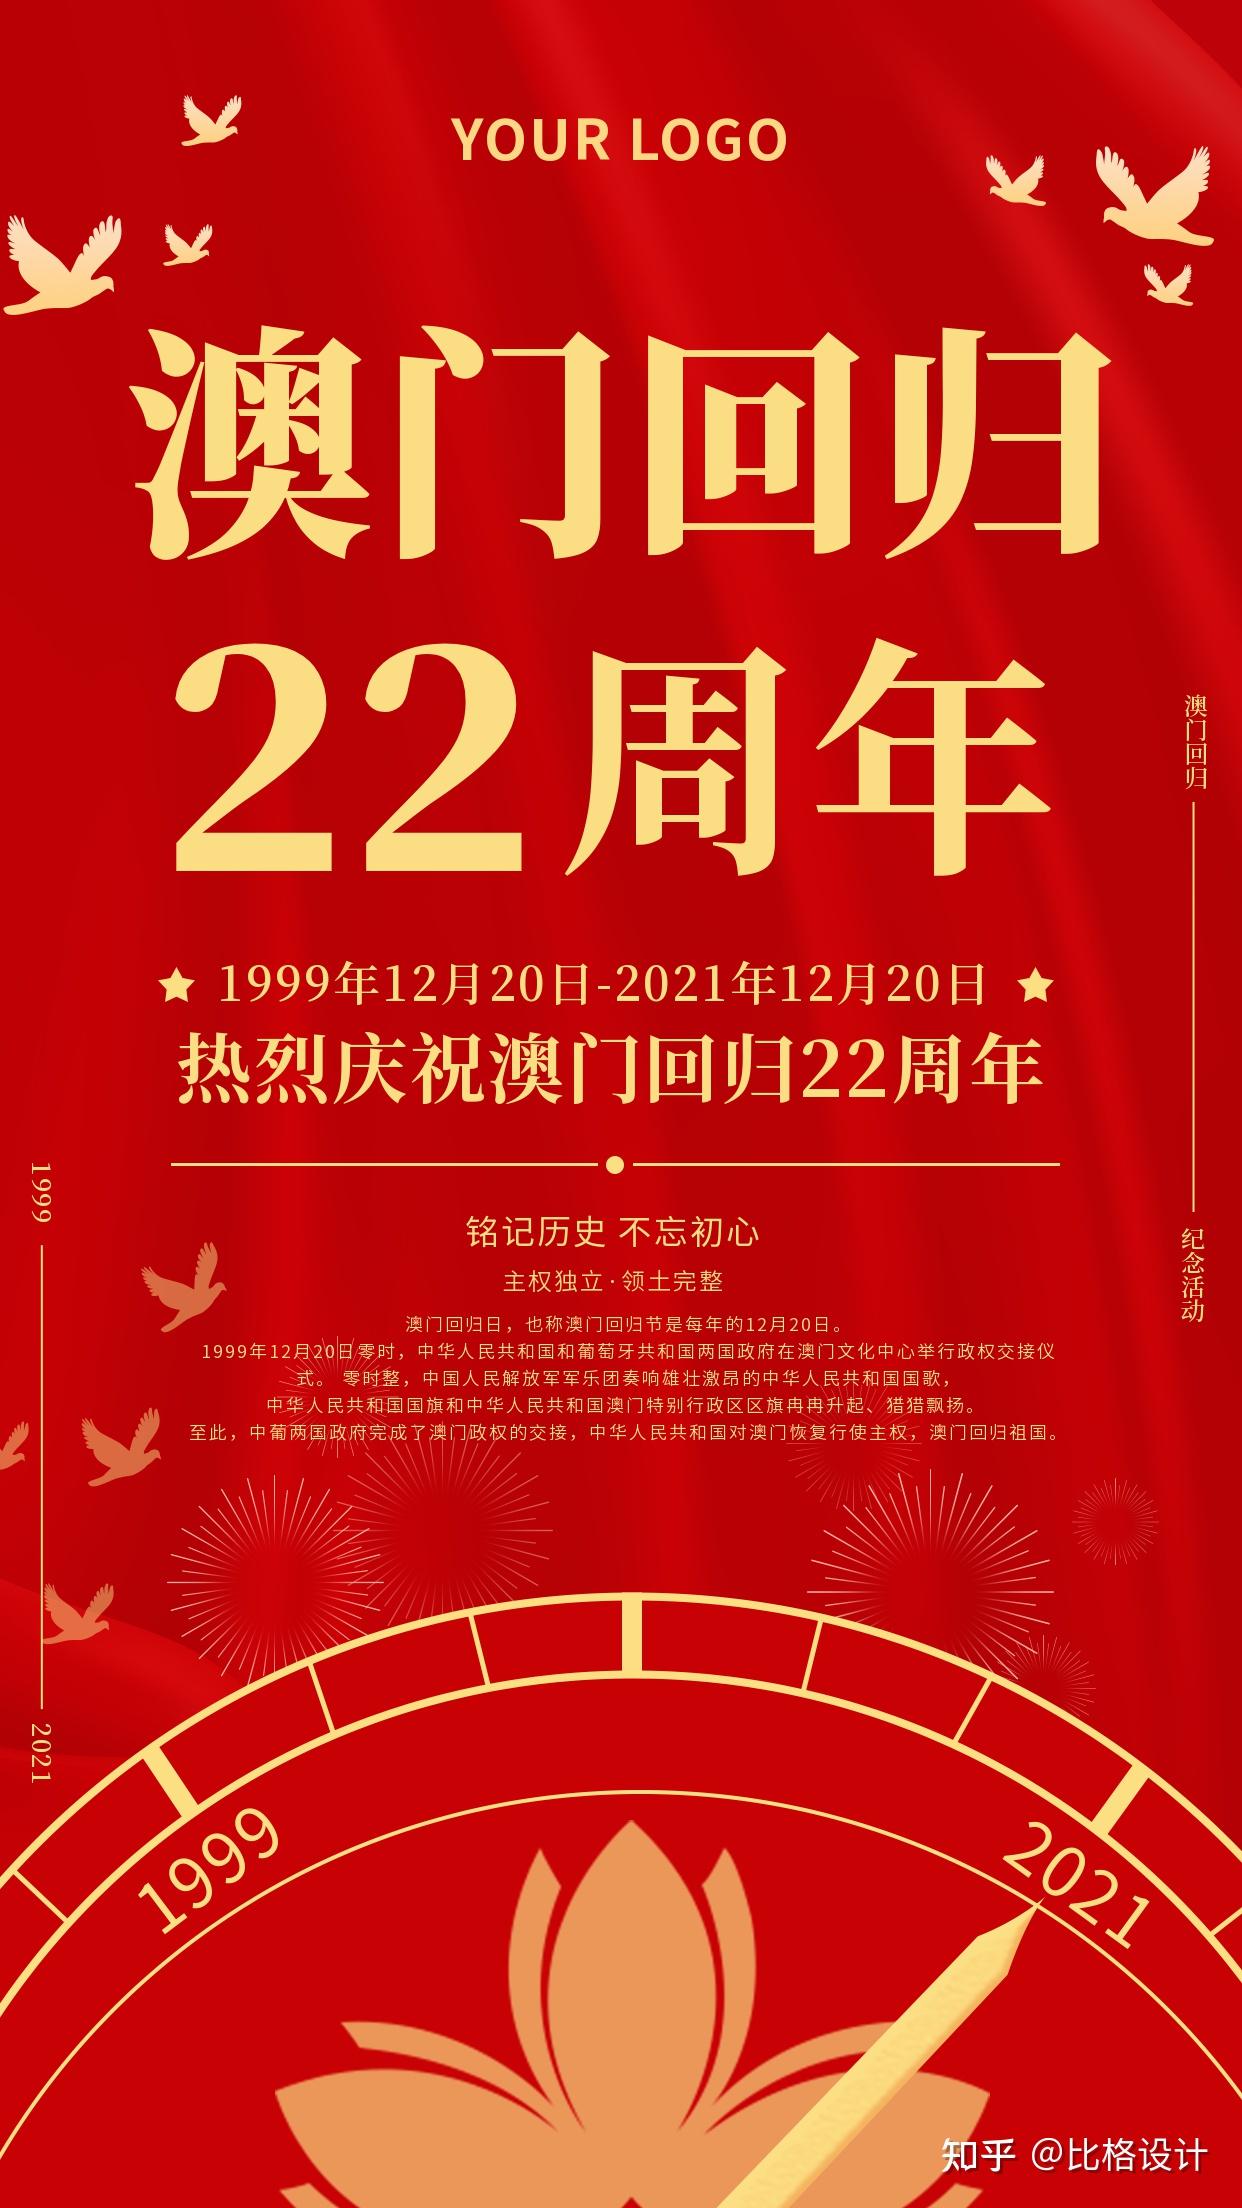 1220澳门回归22周年庆祝海报文案分享干货收藏